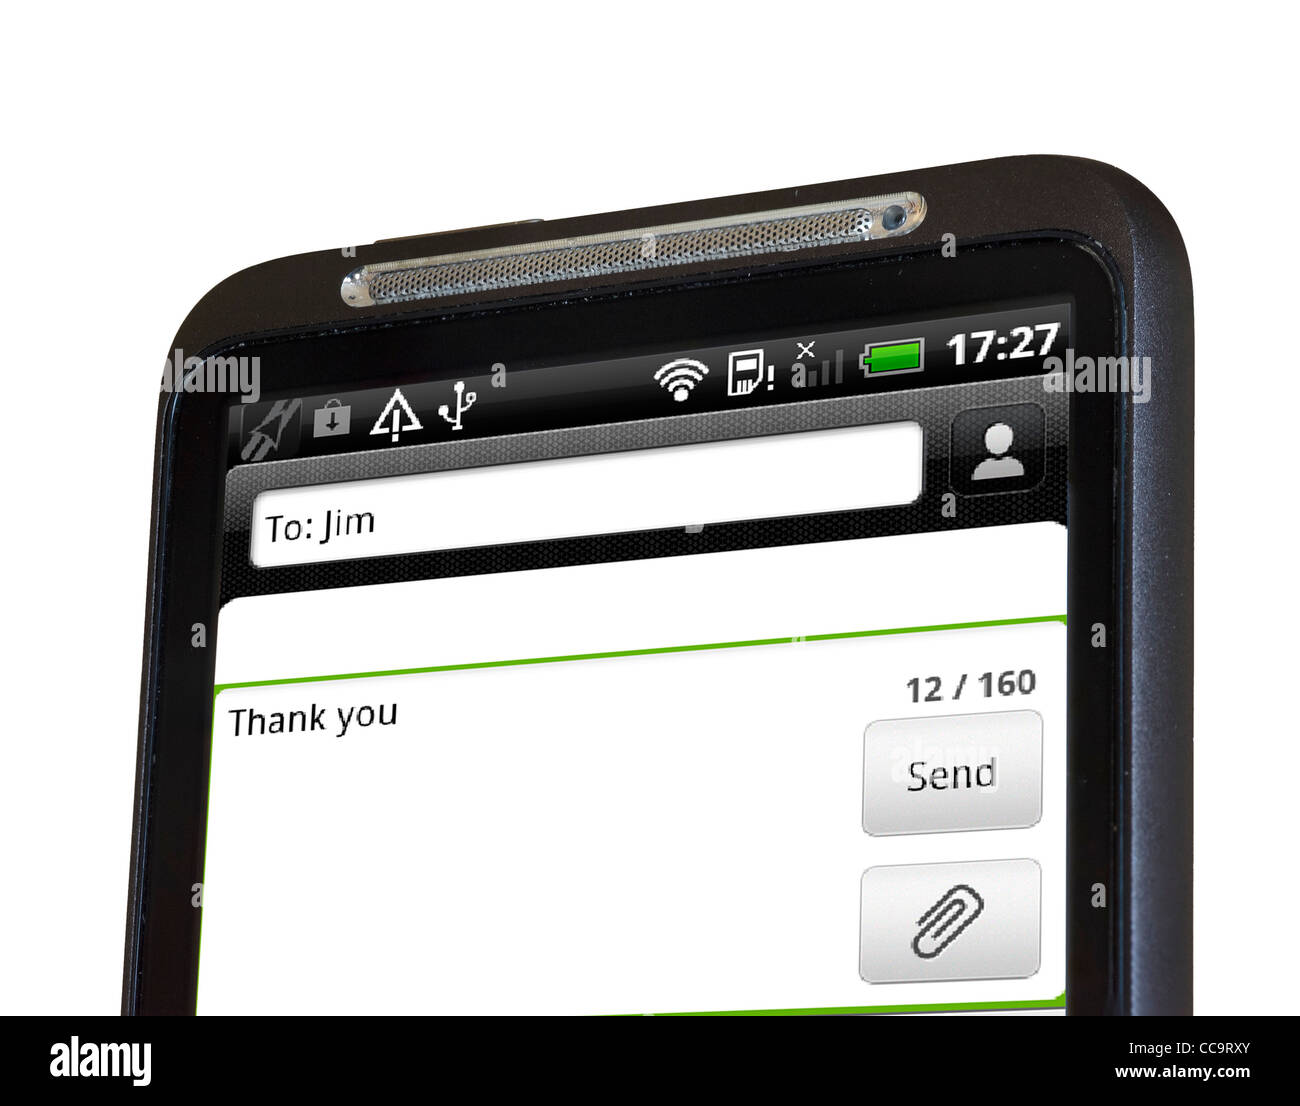 Senden eine SMS-Nachricht auf einem android HTC-smartphone Stockfoto